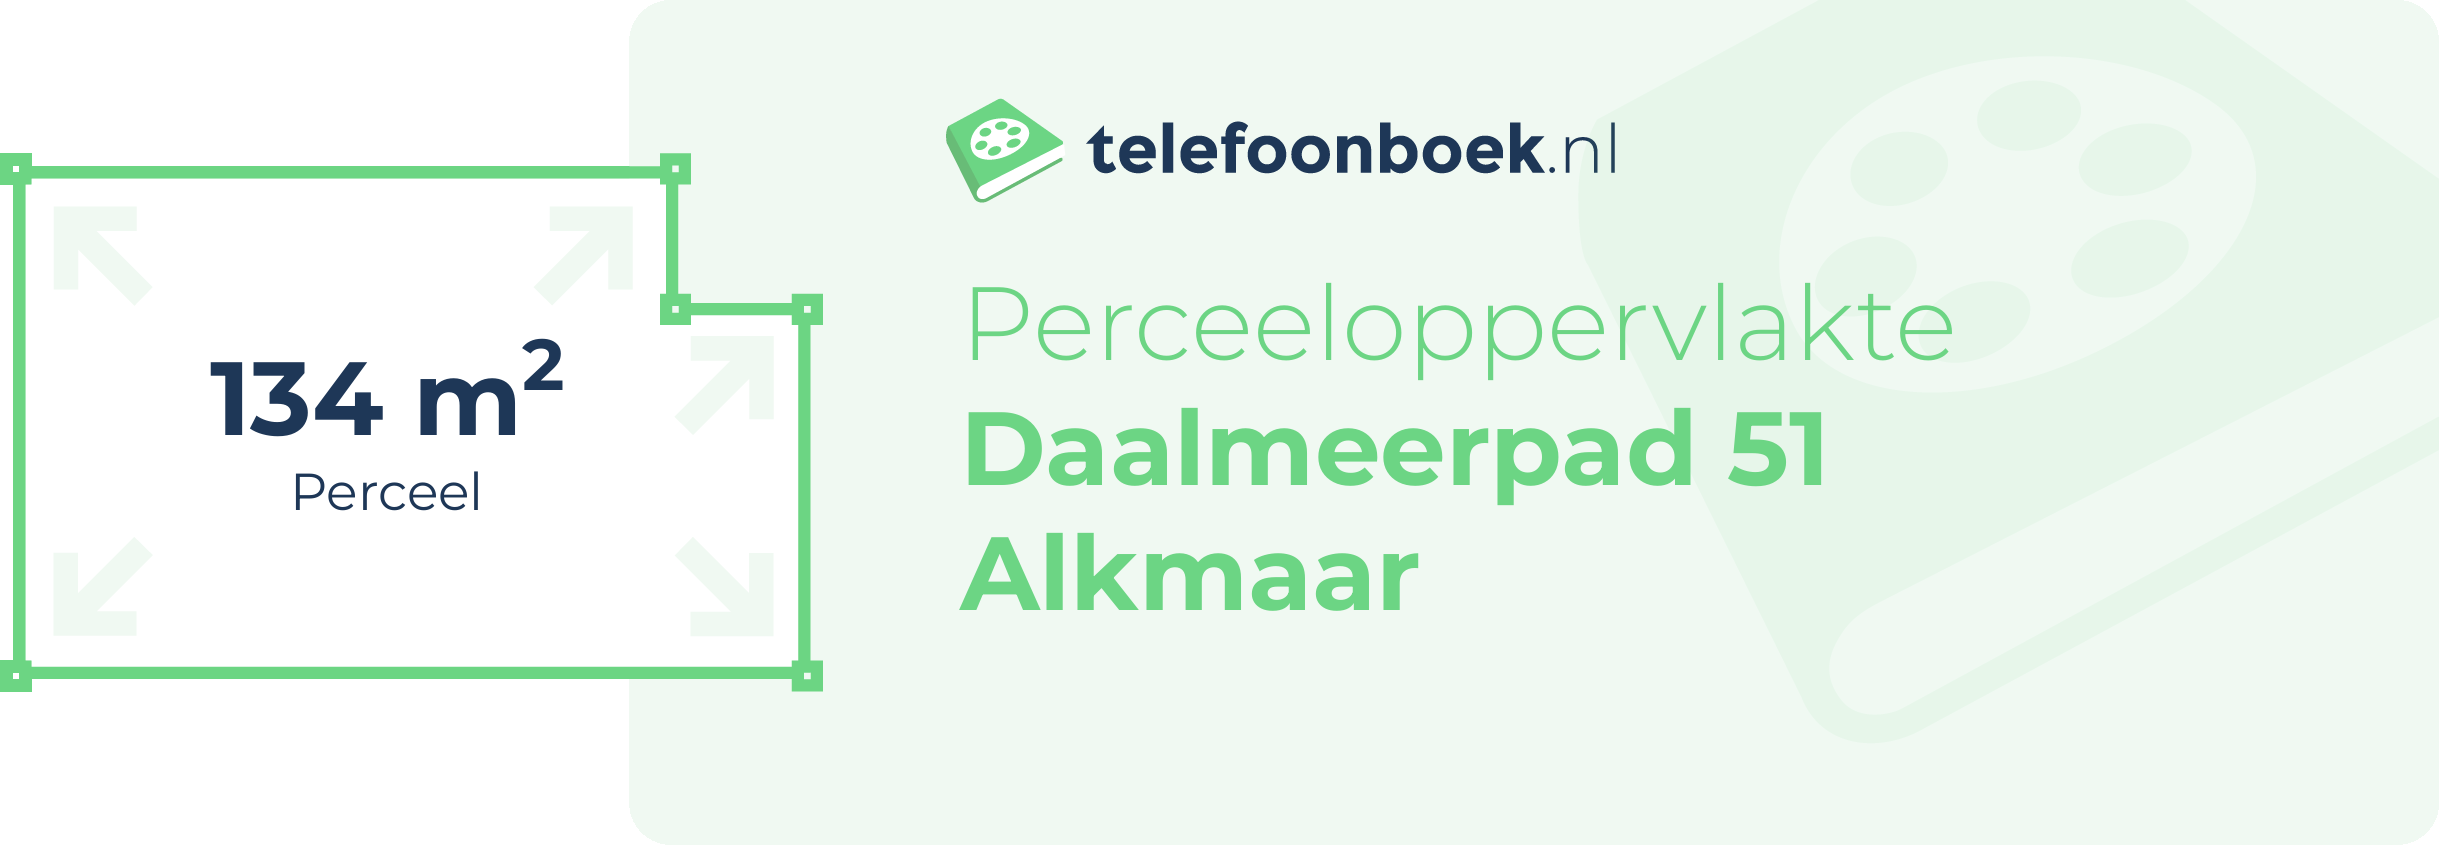 Perceeloppervlakte Daalmeerpad 51 Alkmaar